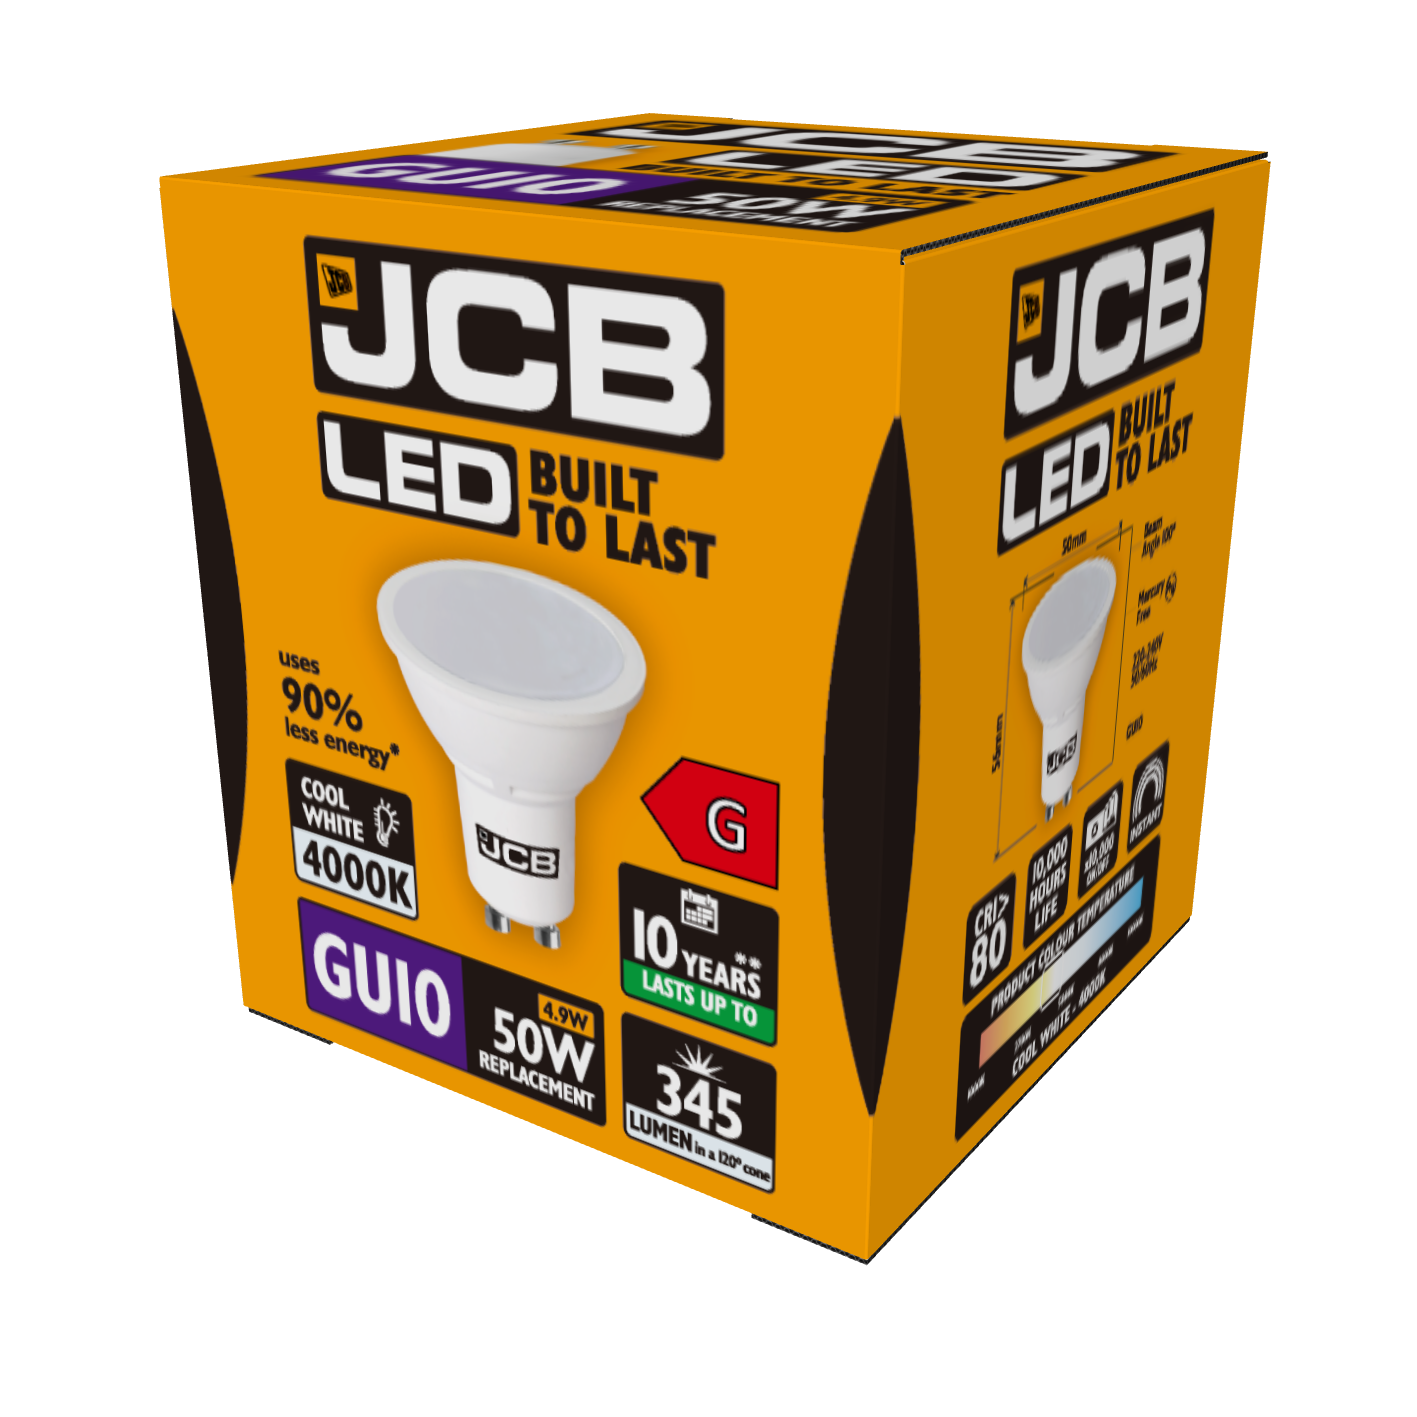 JCB LED GU10 345lm 4.9W 4,000K (Cool White), Box of 1